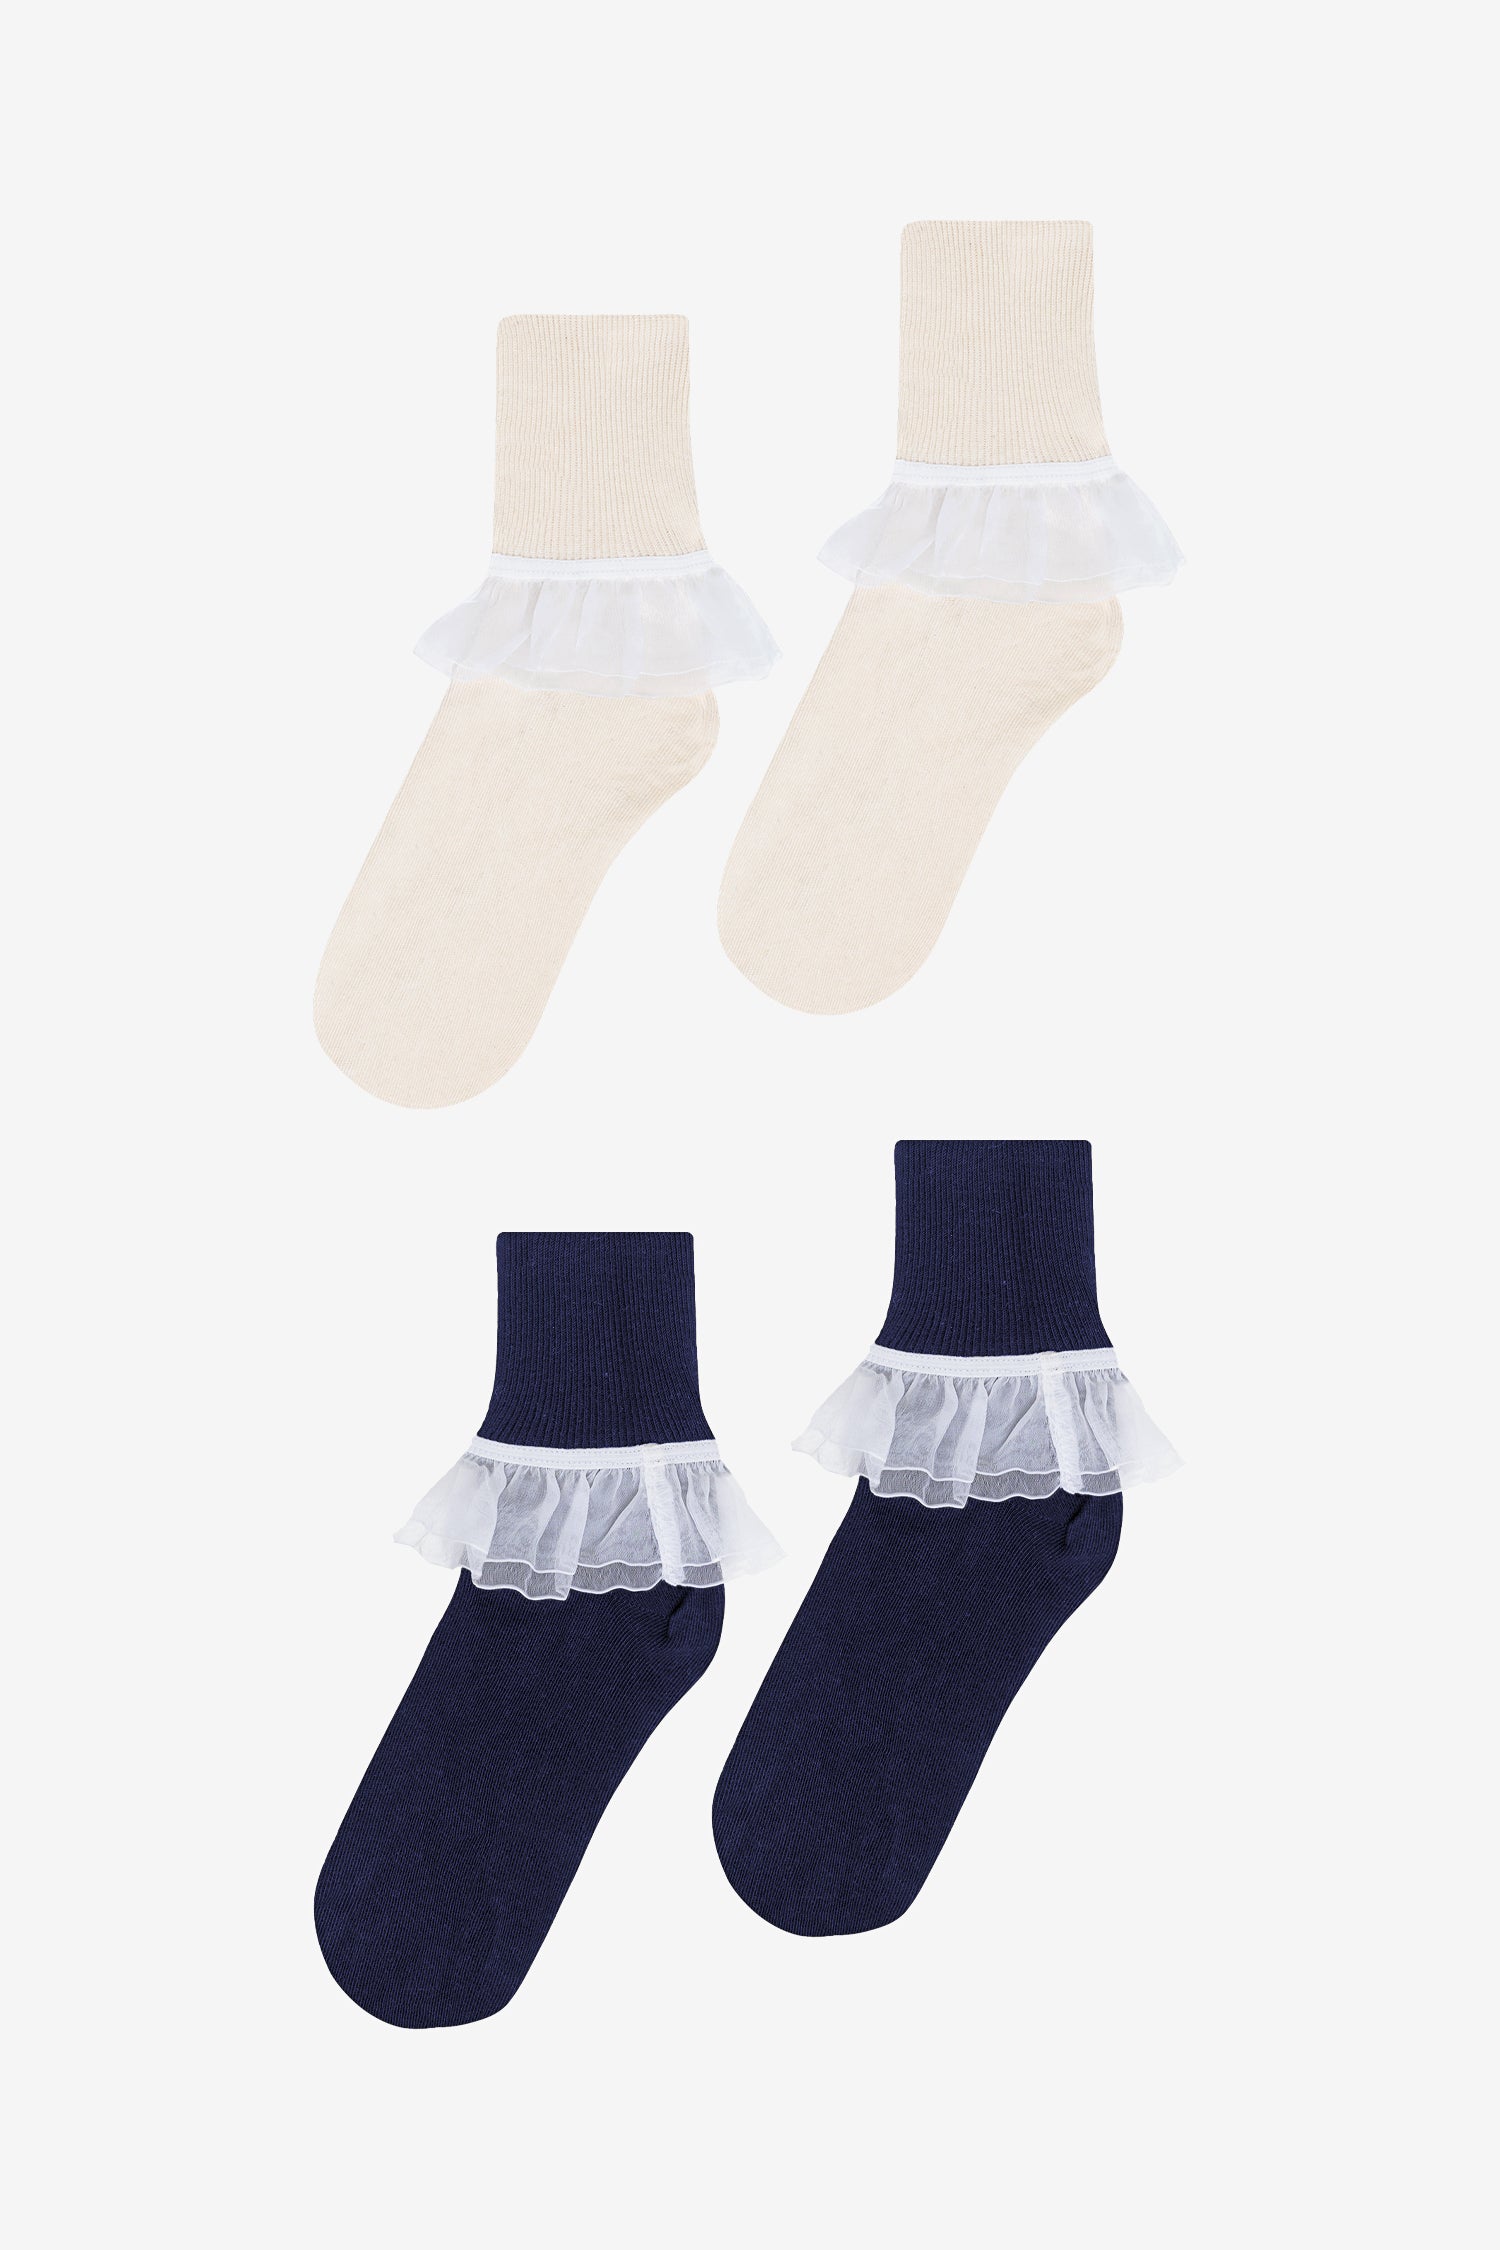 KMart Hosiery & Socks for Women - Poshmark